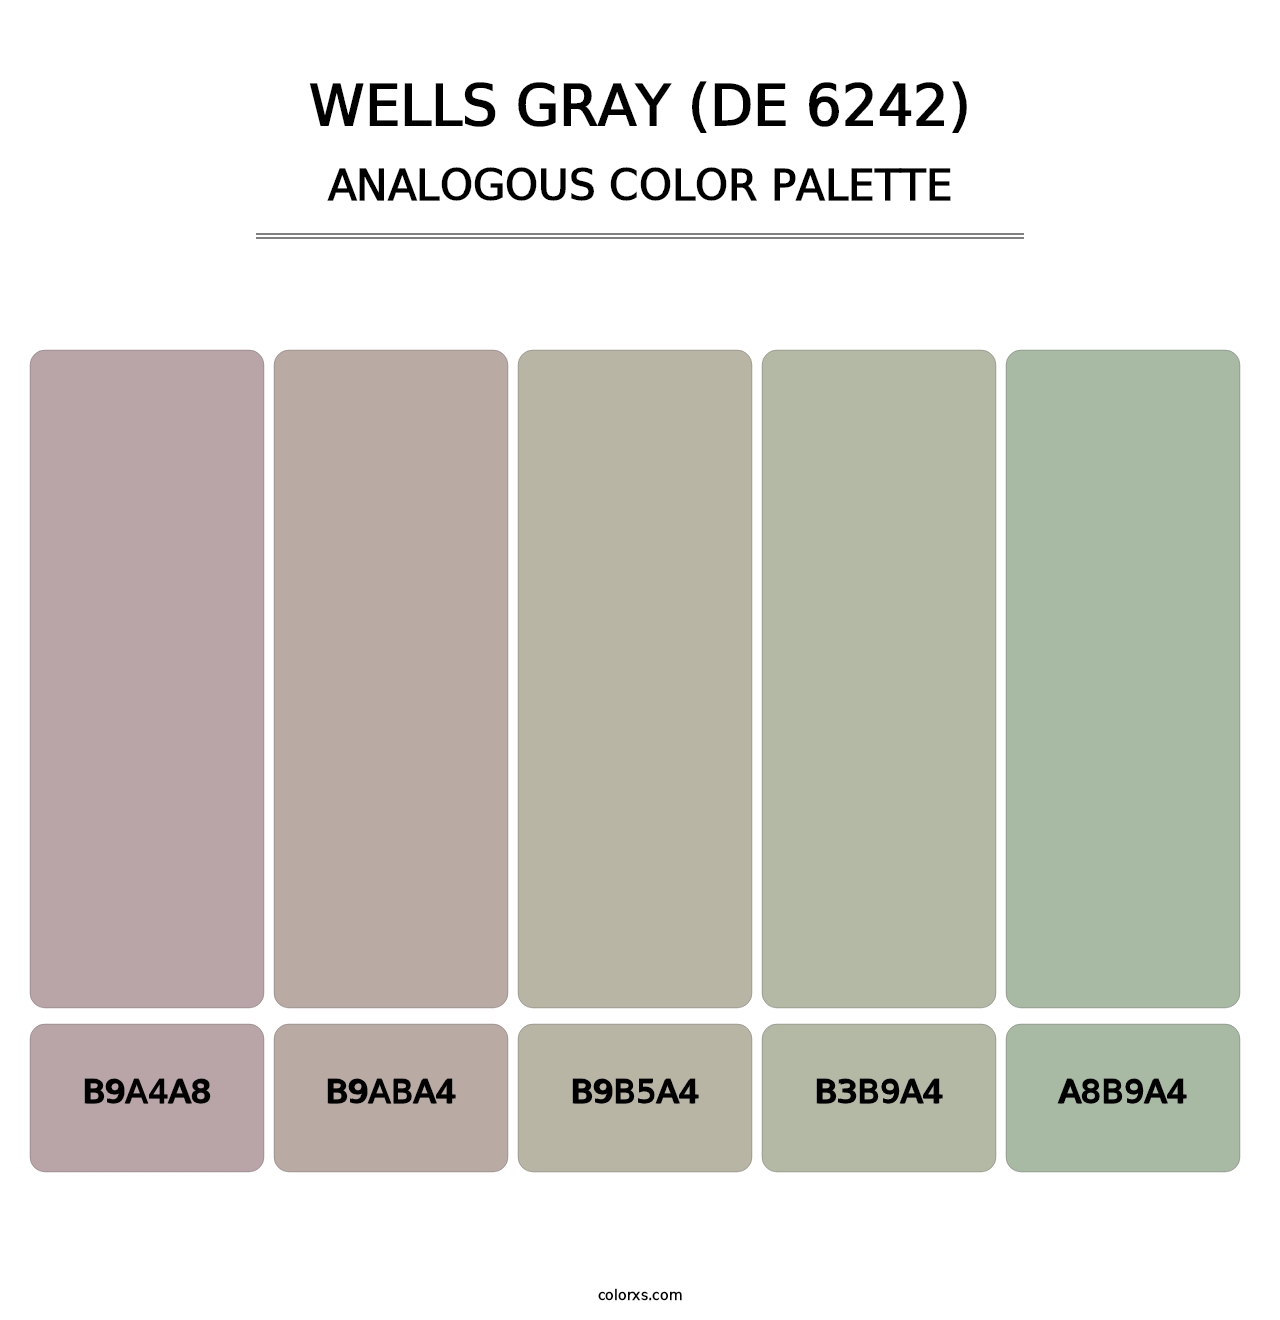 Wells Gray (DE 6242) - Analogous Color Palette